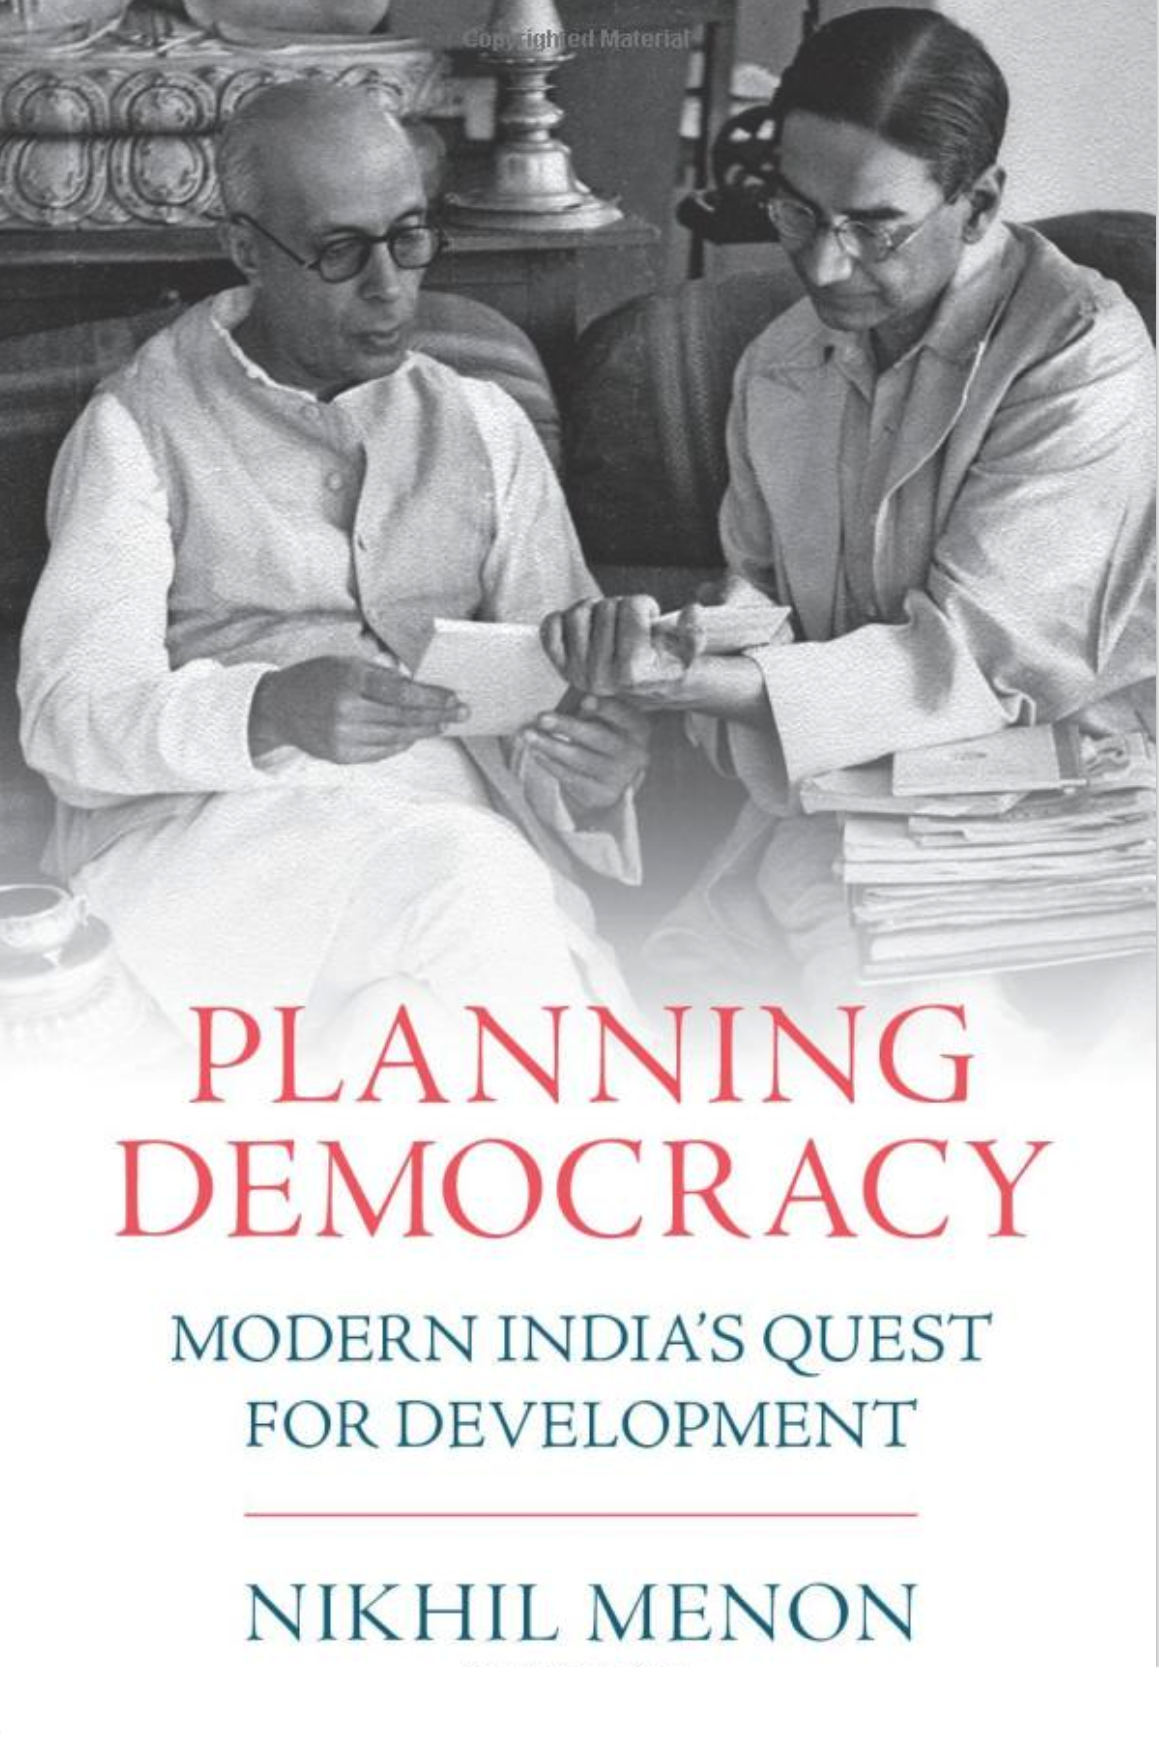 Planning Democracy by Nikhil Menon